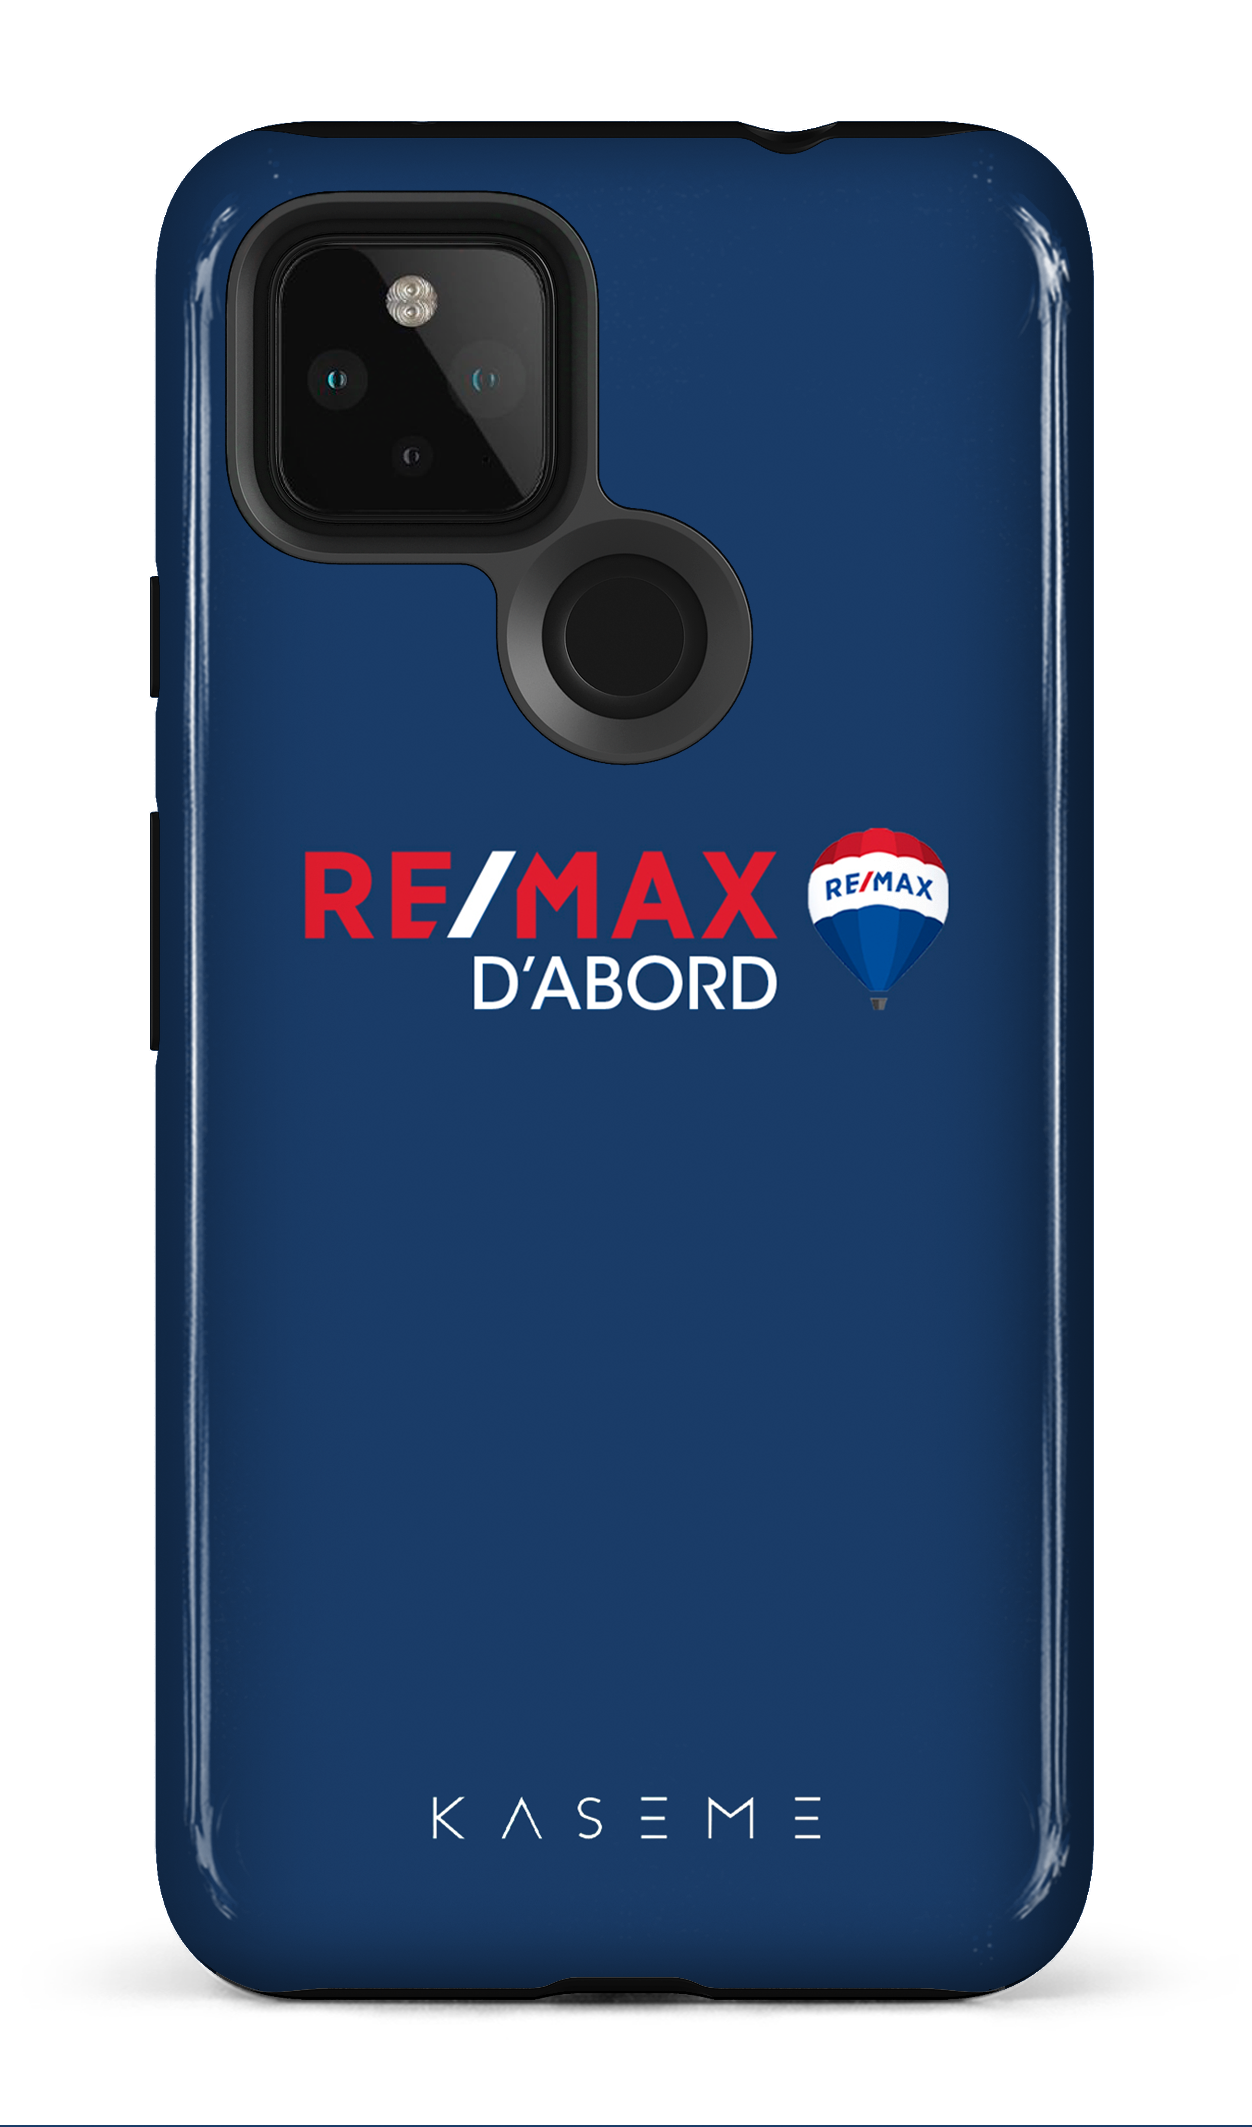 Remax D'abord Bleu - Google Pixel 4A (5G)